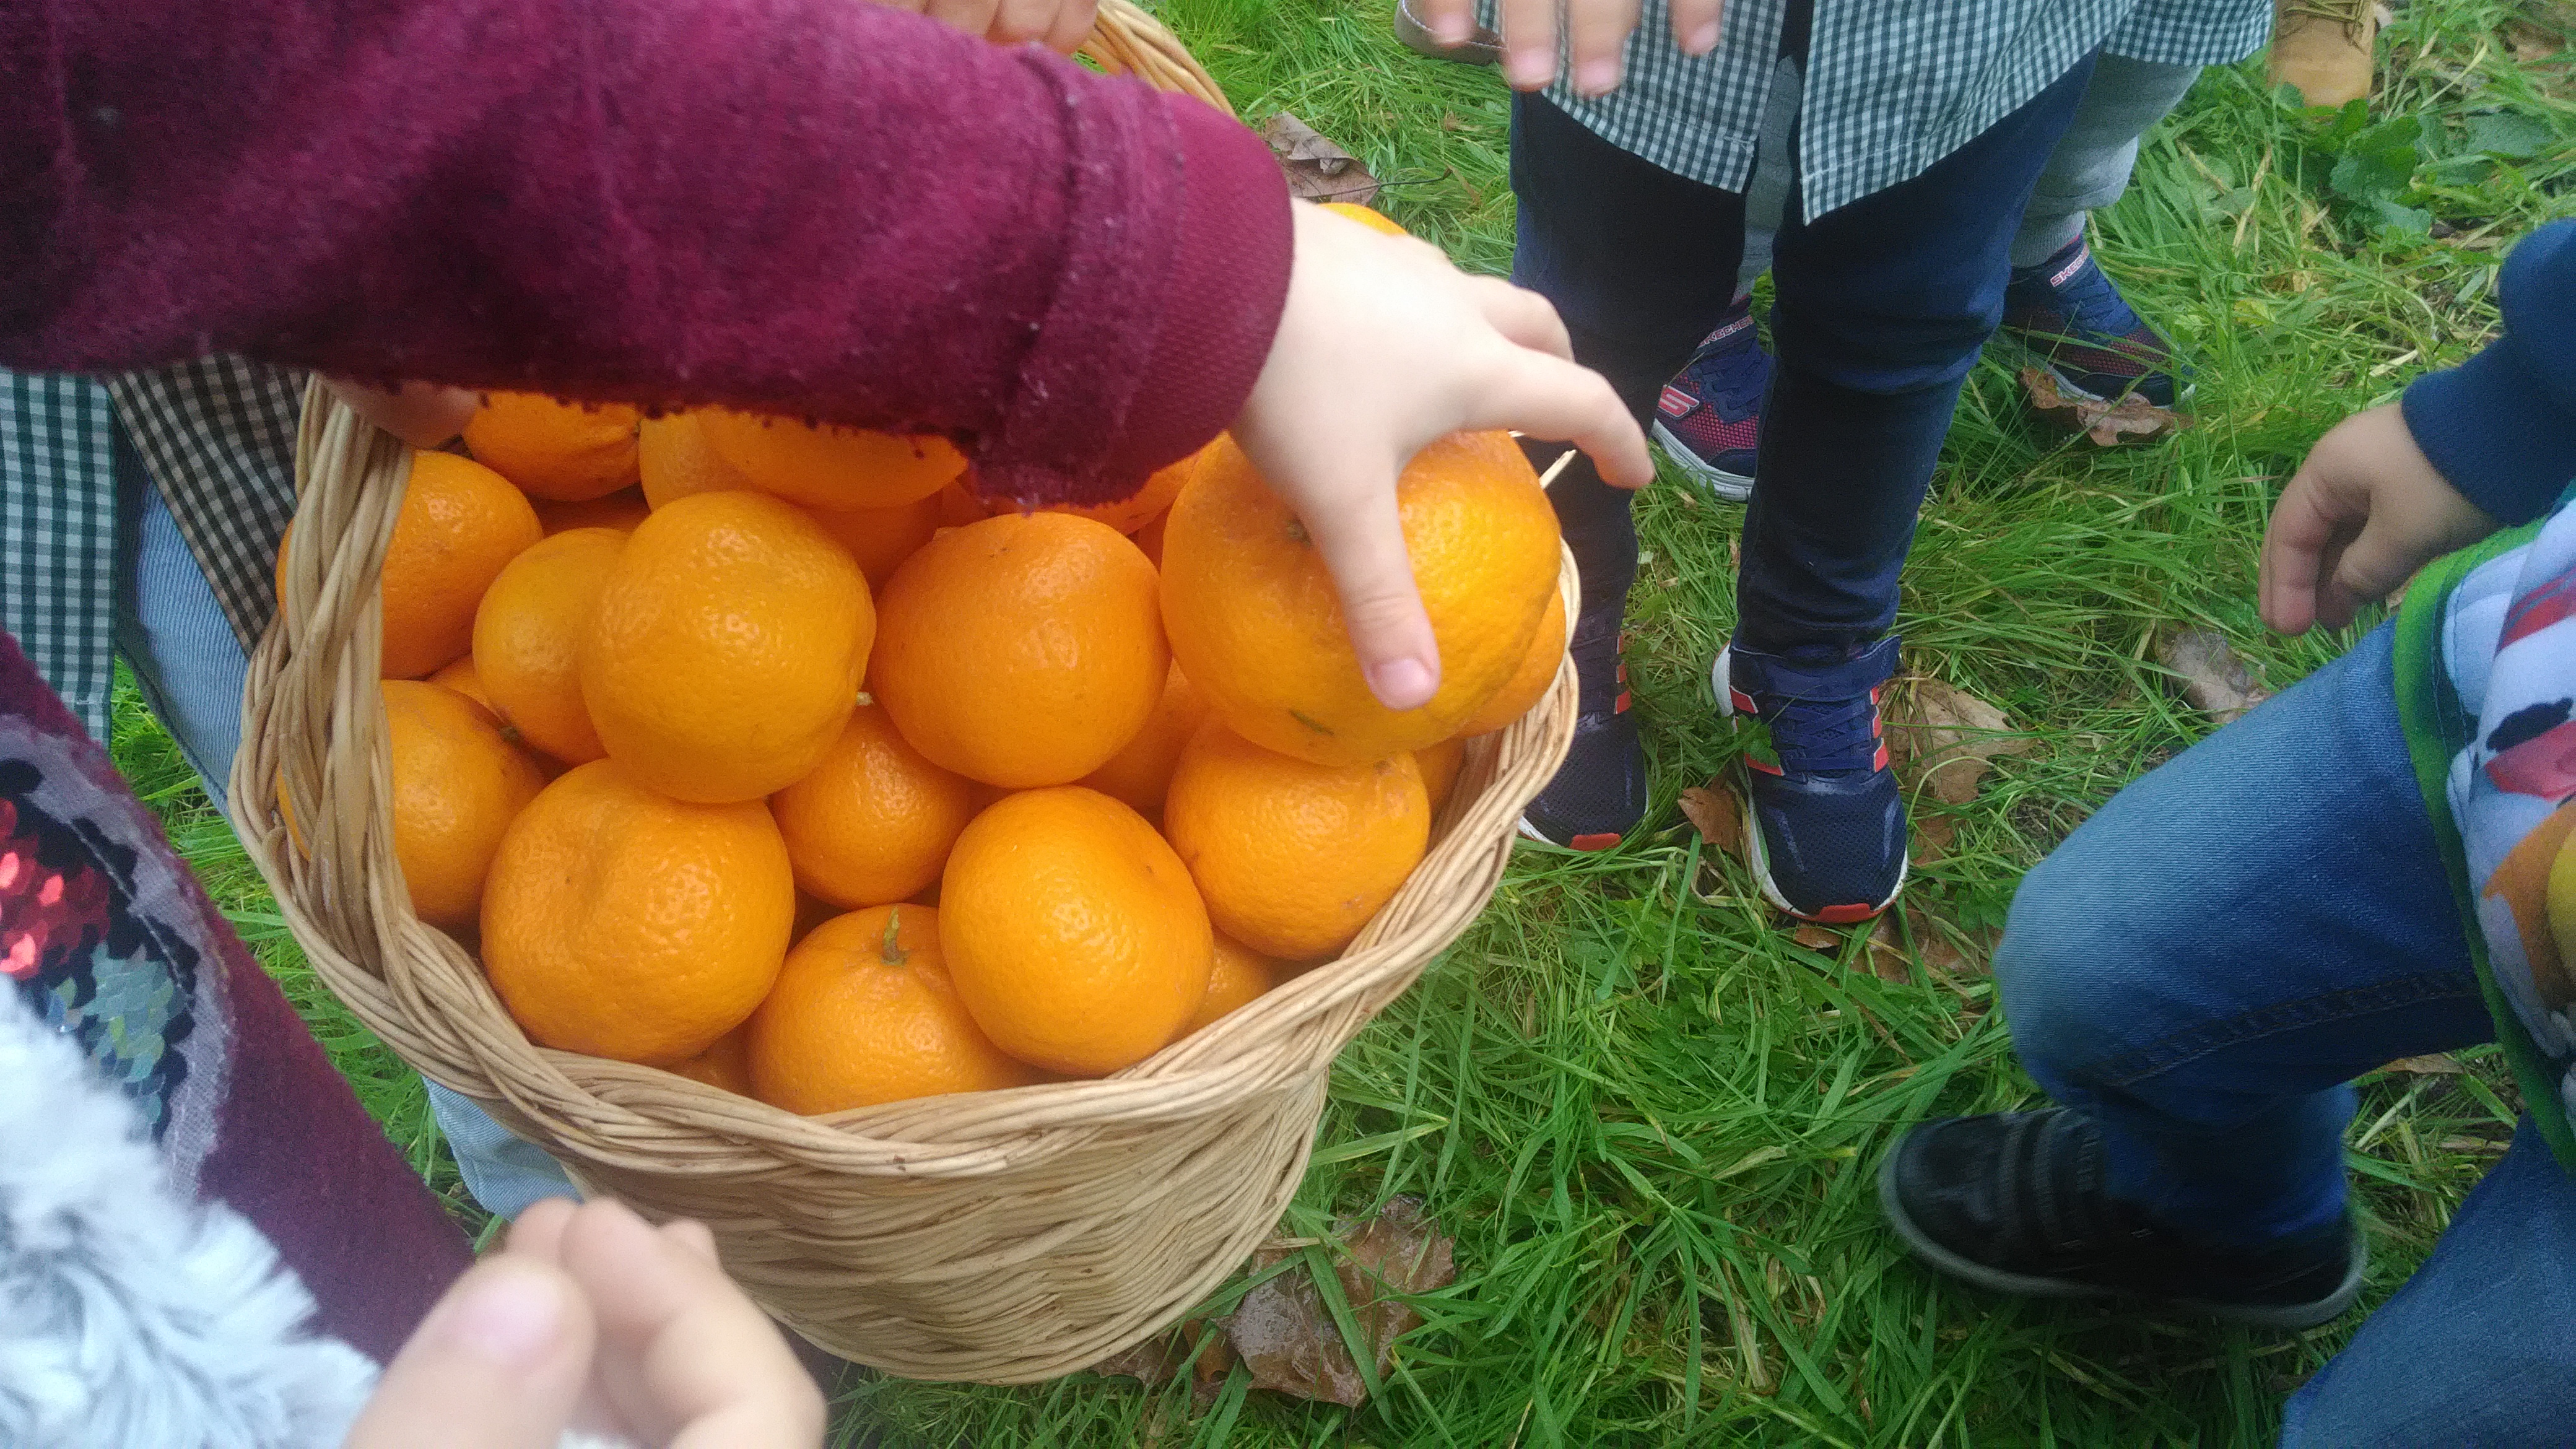 Colocação dos frutos na cesta.